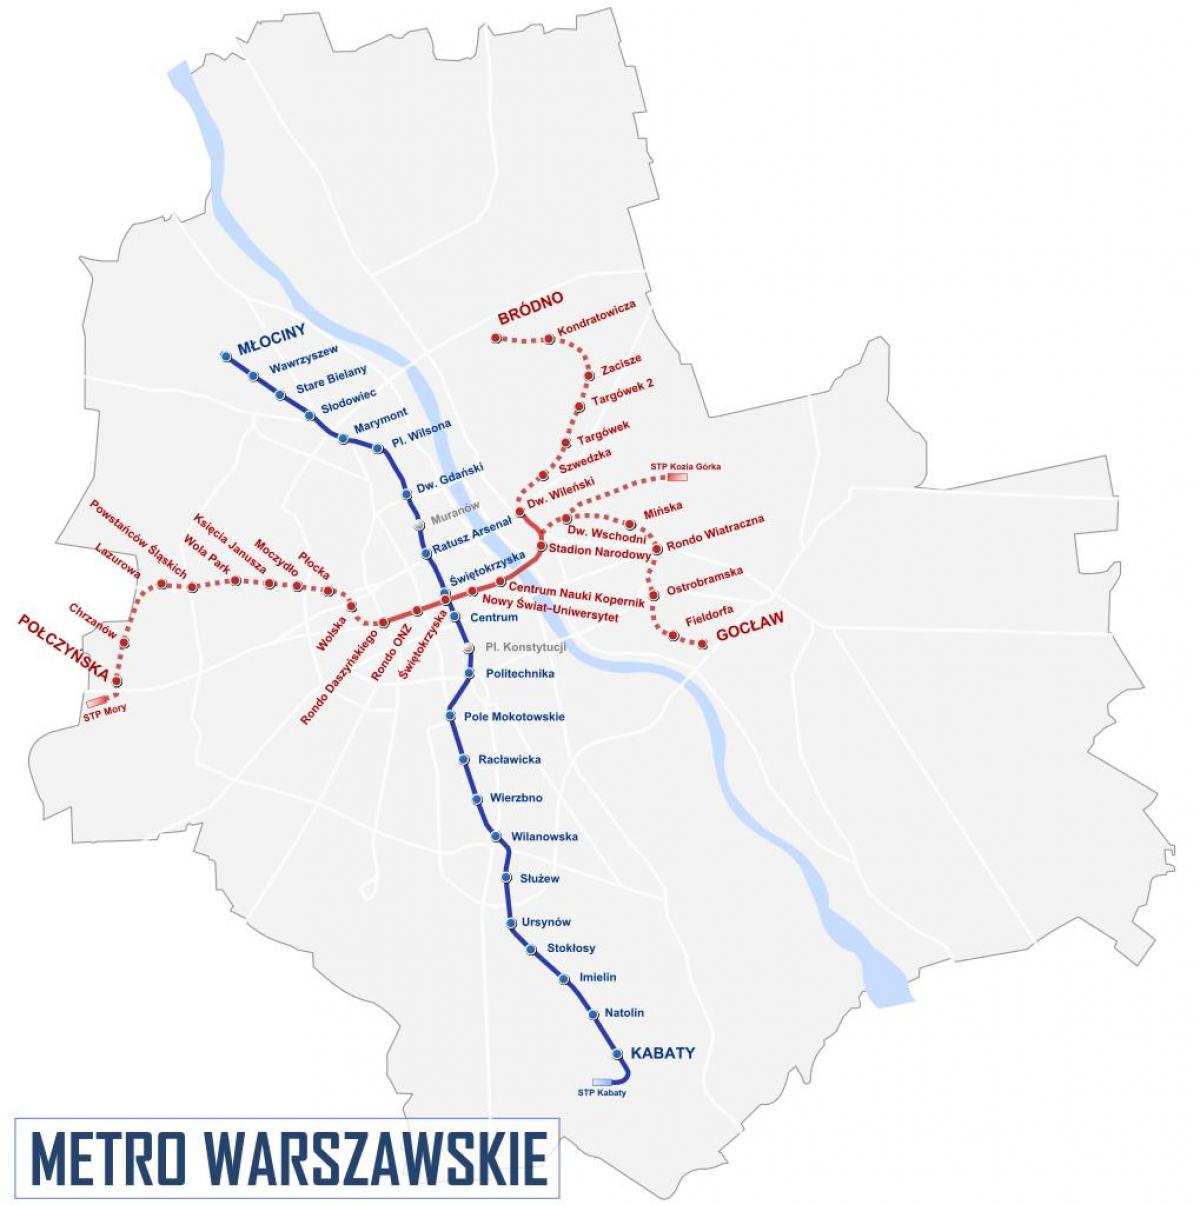 Peta Warsawa metro 2016